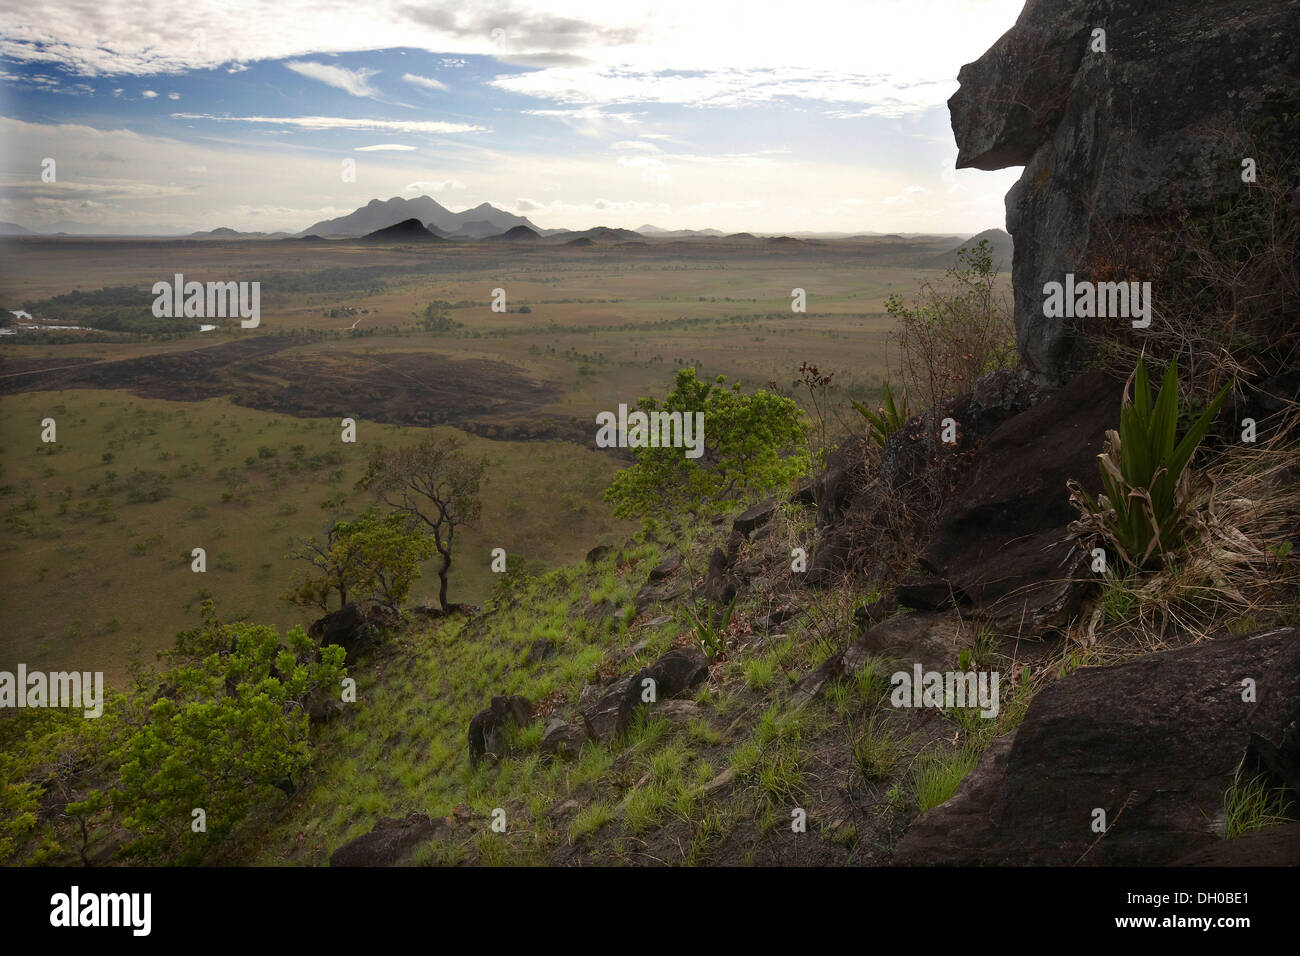 Piton rocheux à la recherche sur le paysage de savane, au Guyana, en Amérique du Sud. Banque D'Images